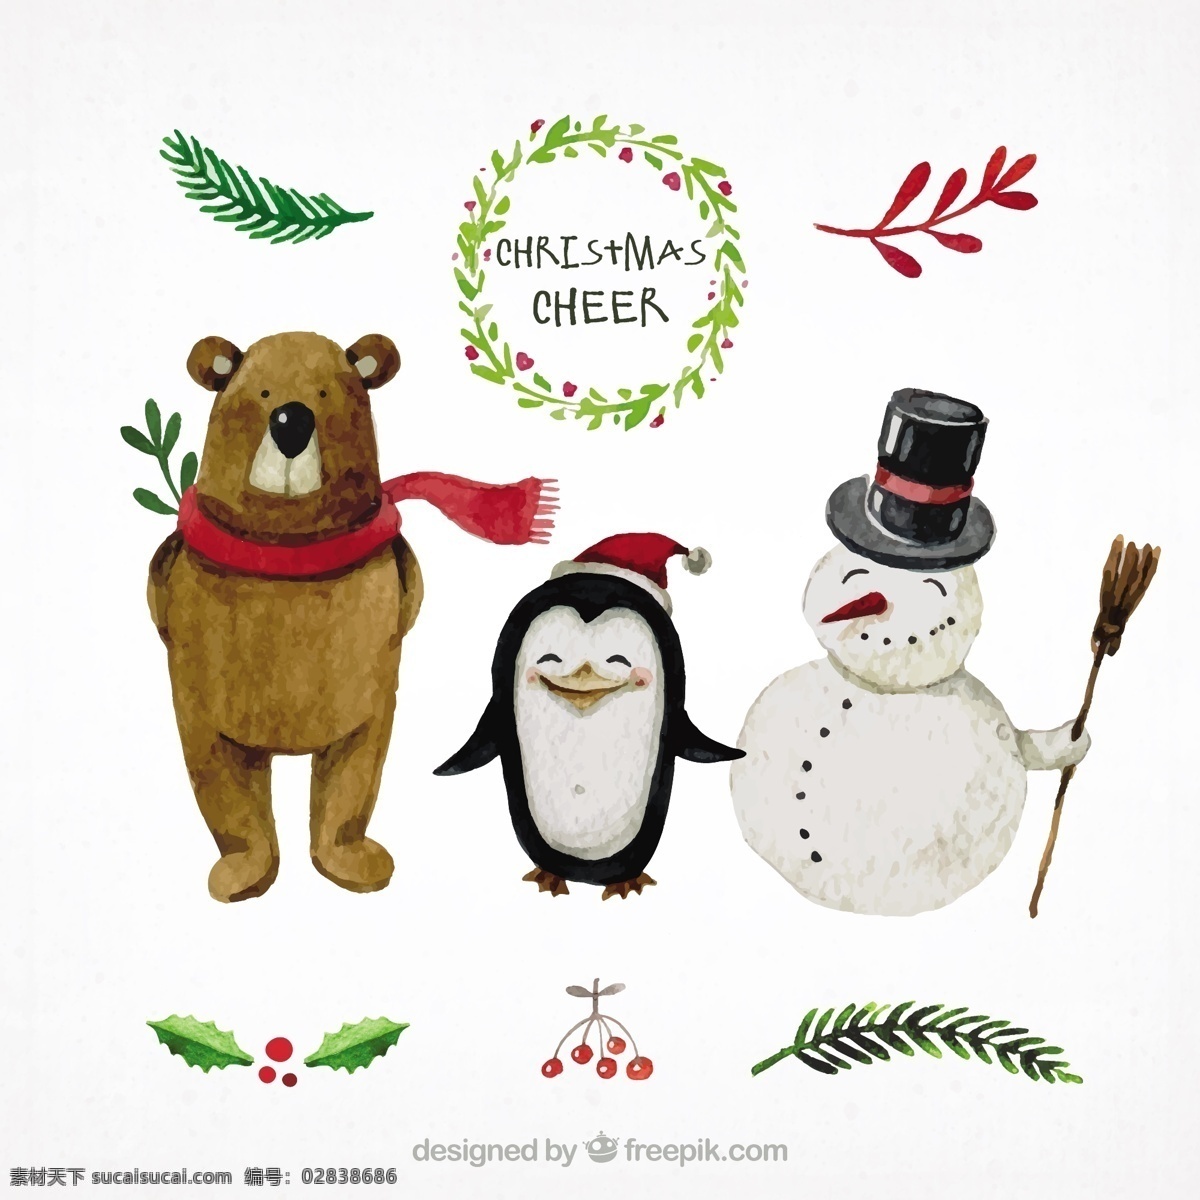 手绘圣诞人物 圣诞节 水彩 一方面 圣诞快乐 冬天 油漆 快乐 性格 熊 庆祝节日 雪人 企鹅 节日快乐 人物 季节 十二月 手绘 白色